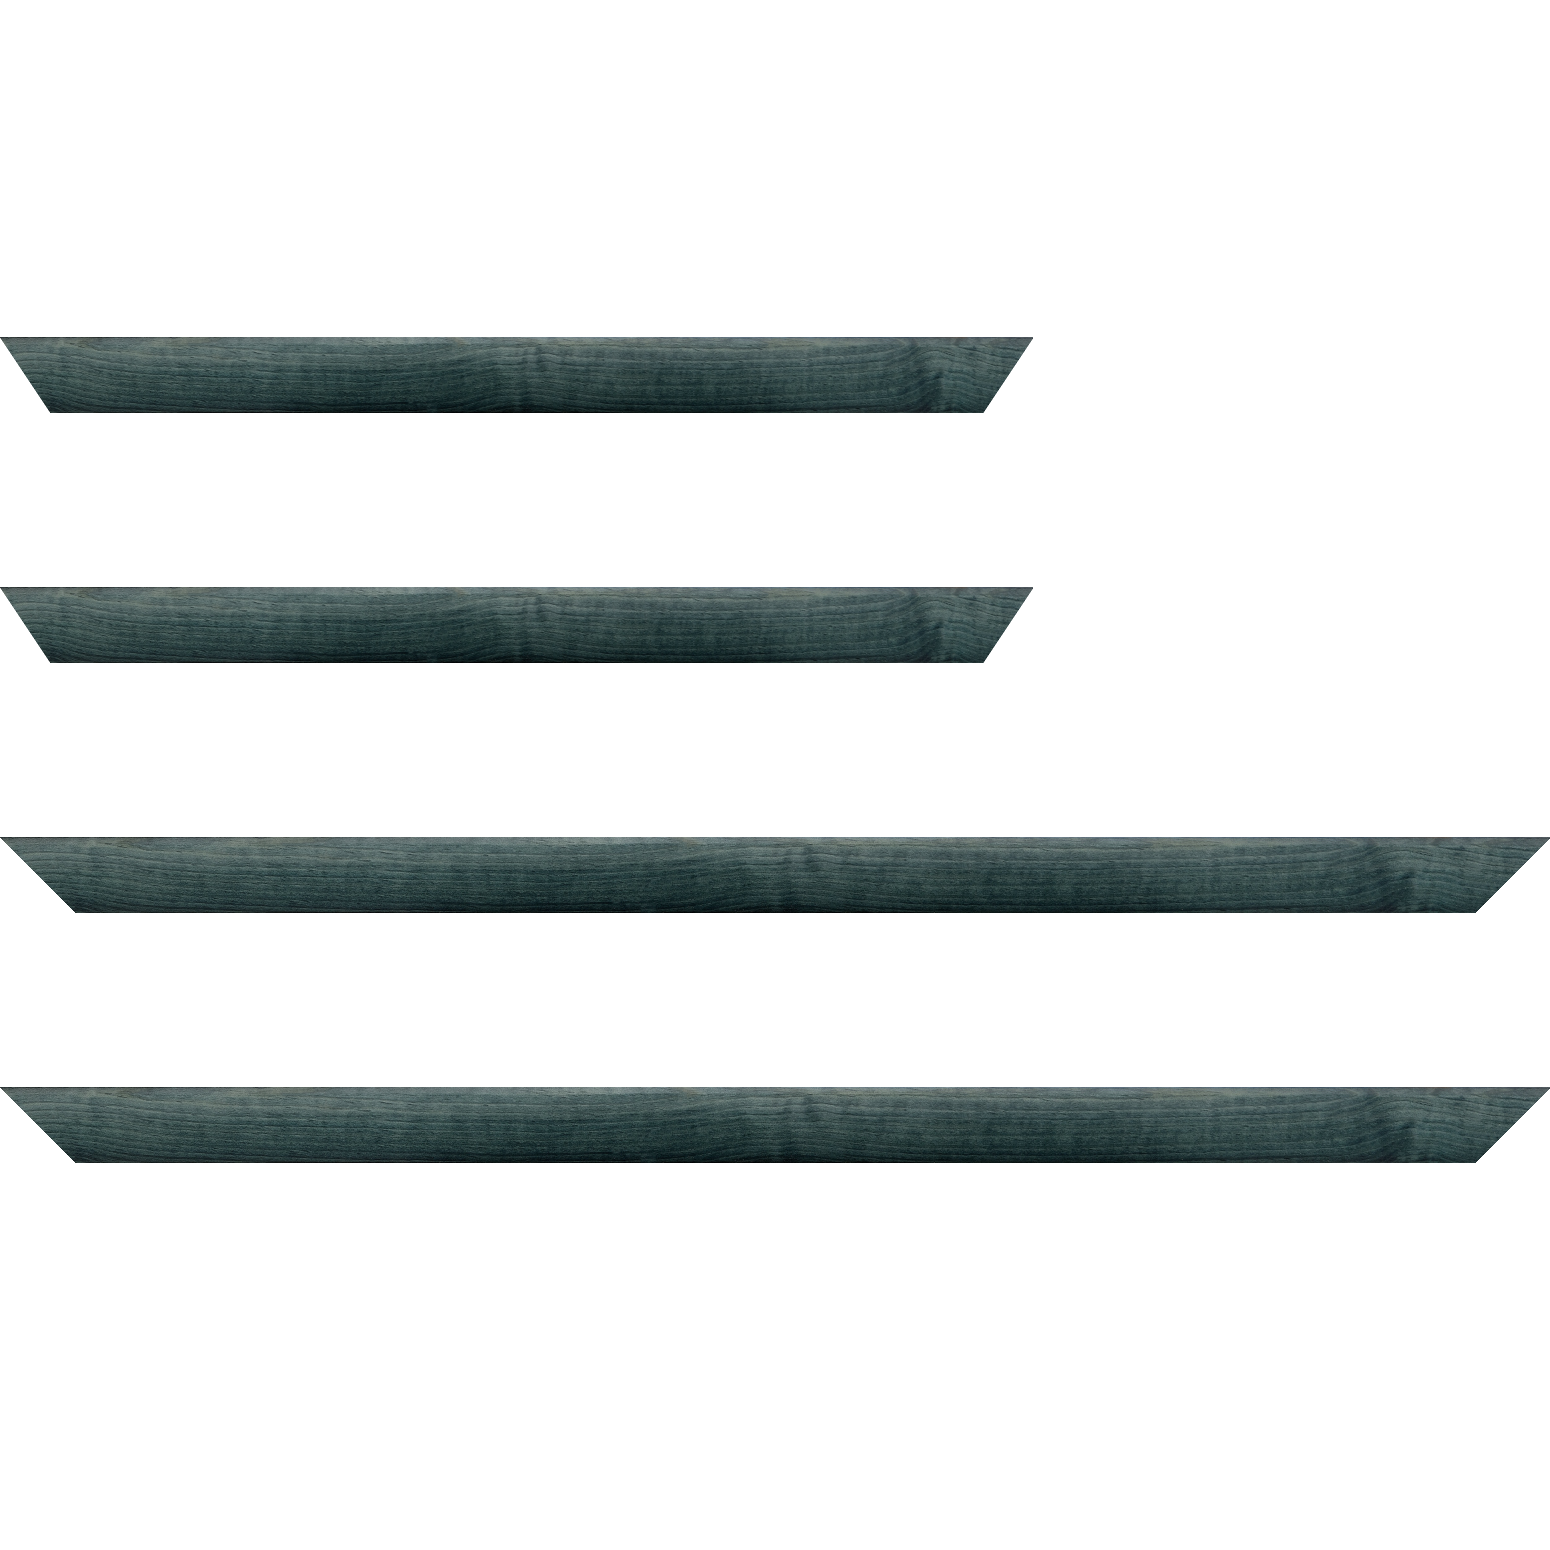 Baguette bois profil arrondi en pente plongeant largeur 2.4cm couleur bleu turquoise foncé finition vernis brillant,veine du bois  apparent (pin) , - 70x100